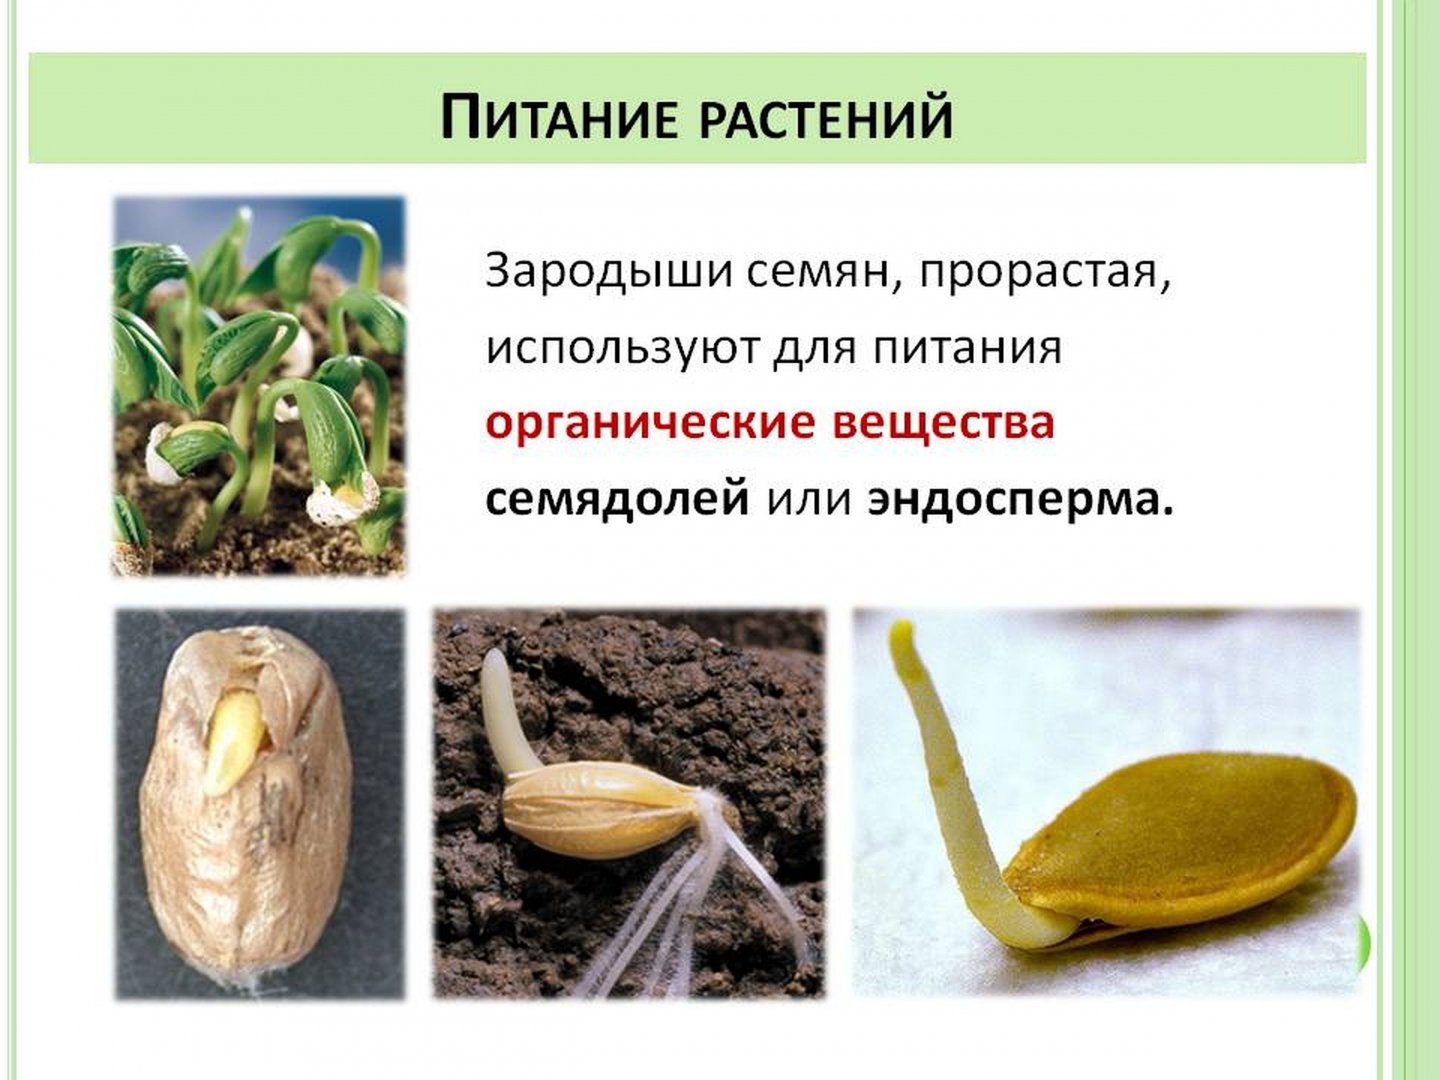 Выберите растения семена которых используют